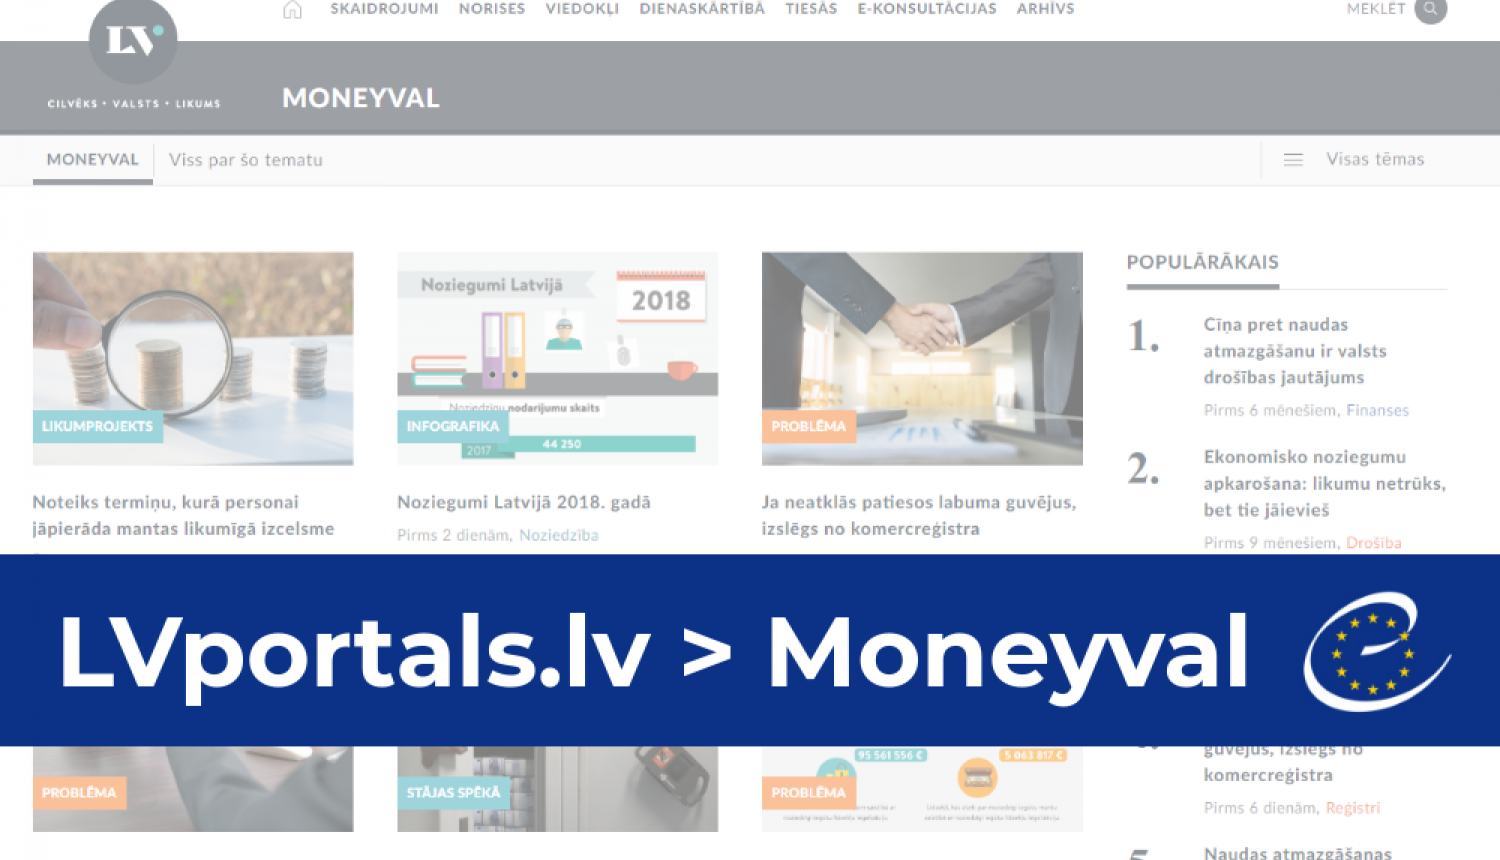 LV portālā jauna satura sadaļa - “Moneyval”